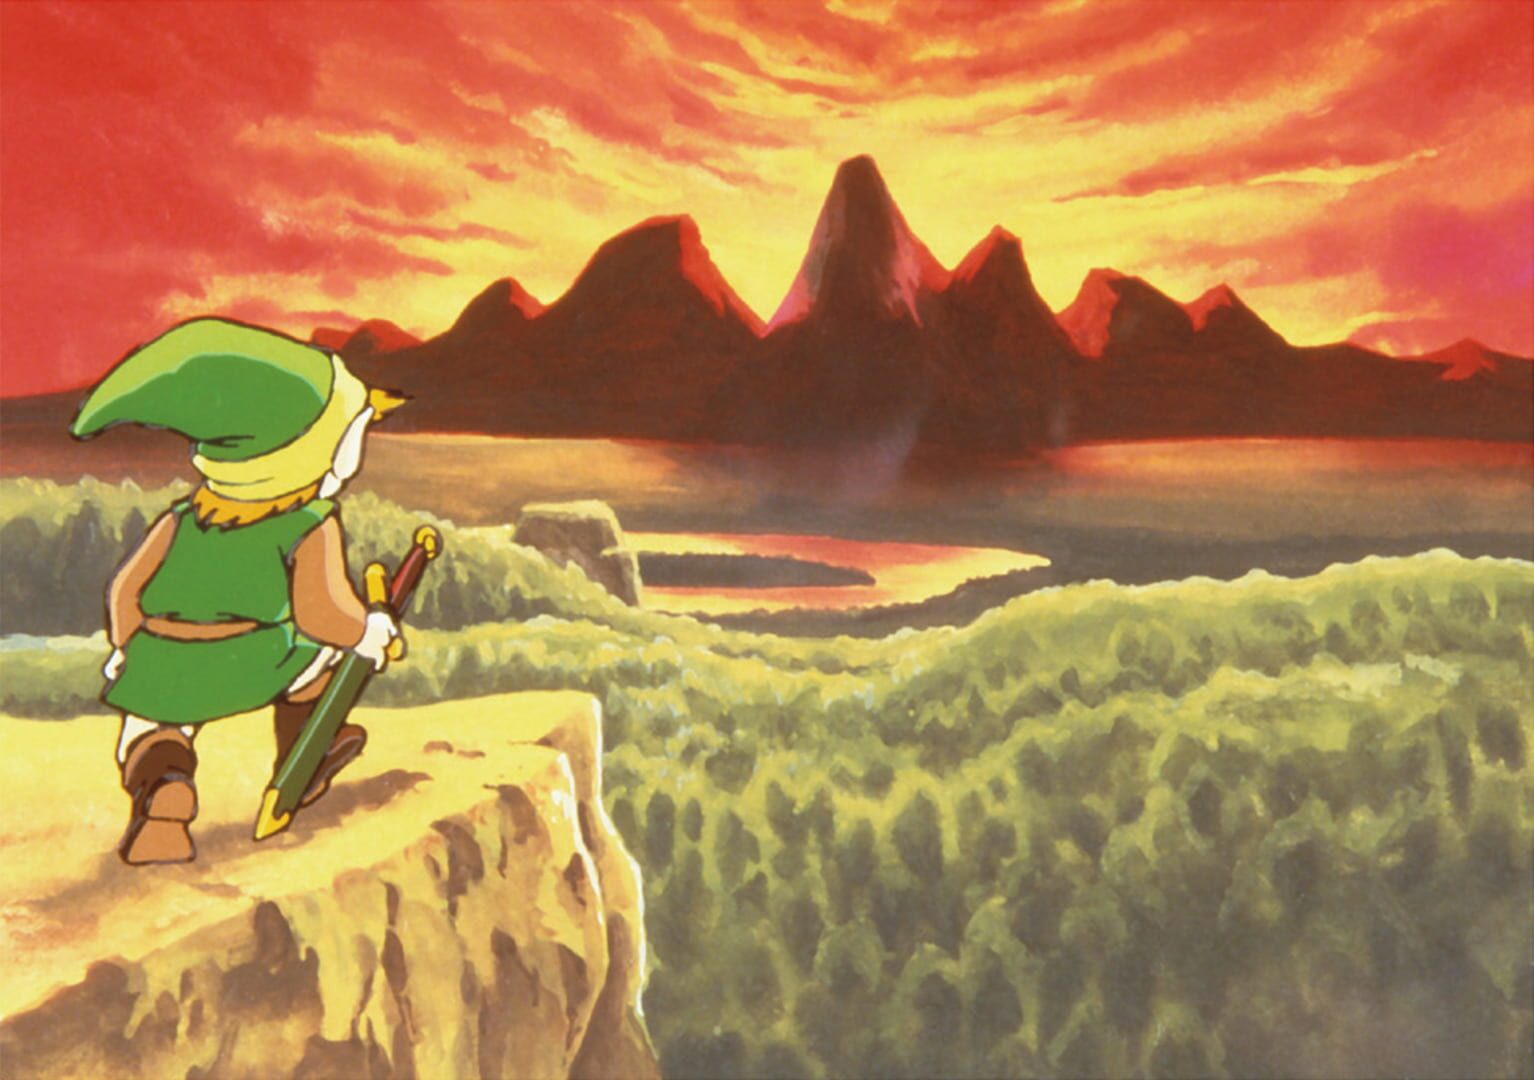 Arte - The Legend of Zelda